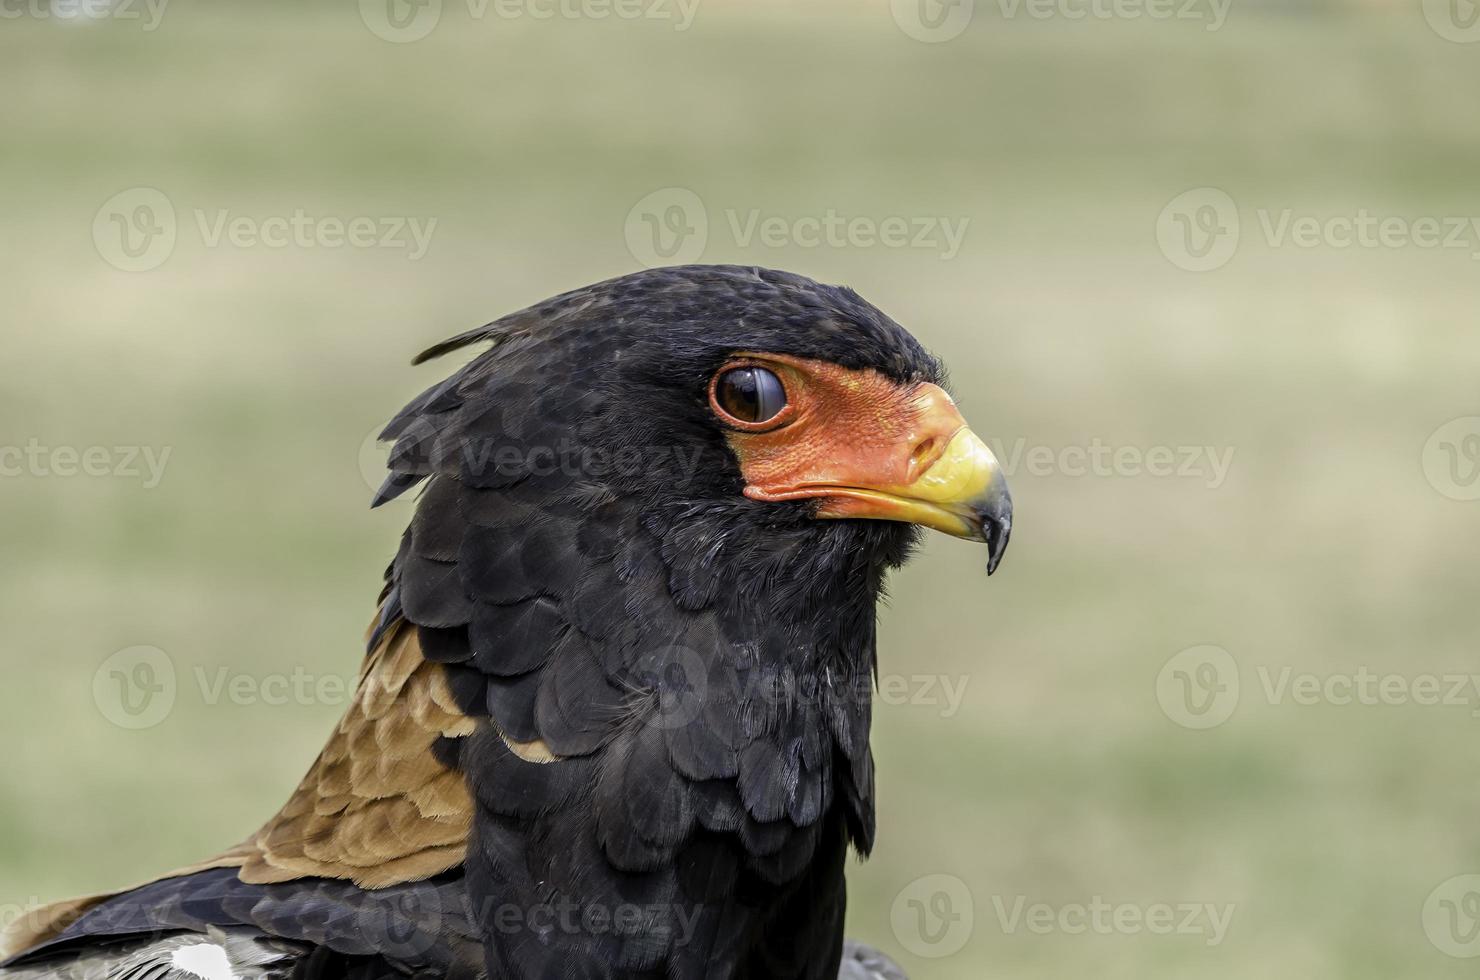 Bateleur eagle,snake eagle, beautiful close up head shot photo